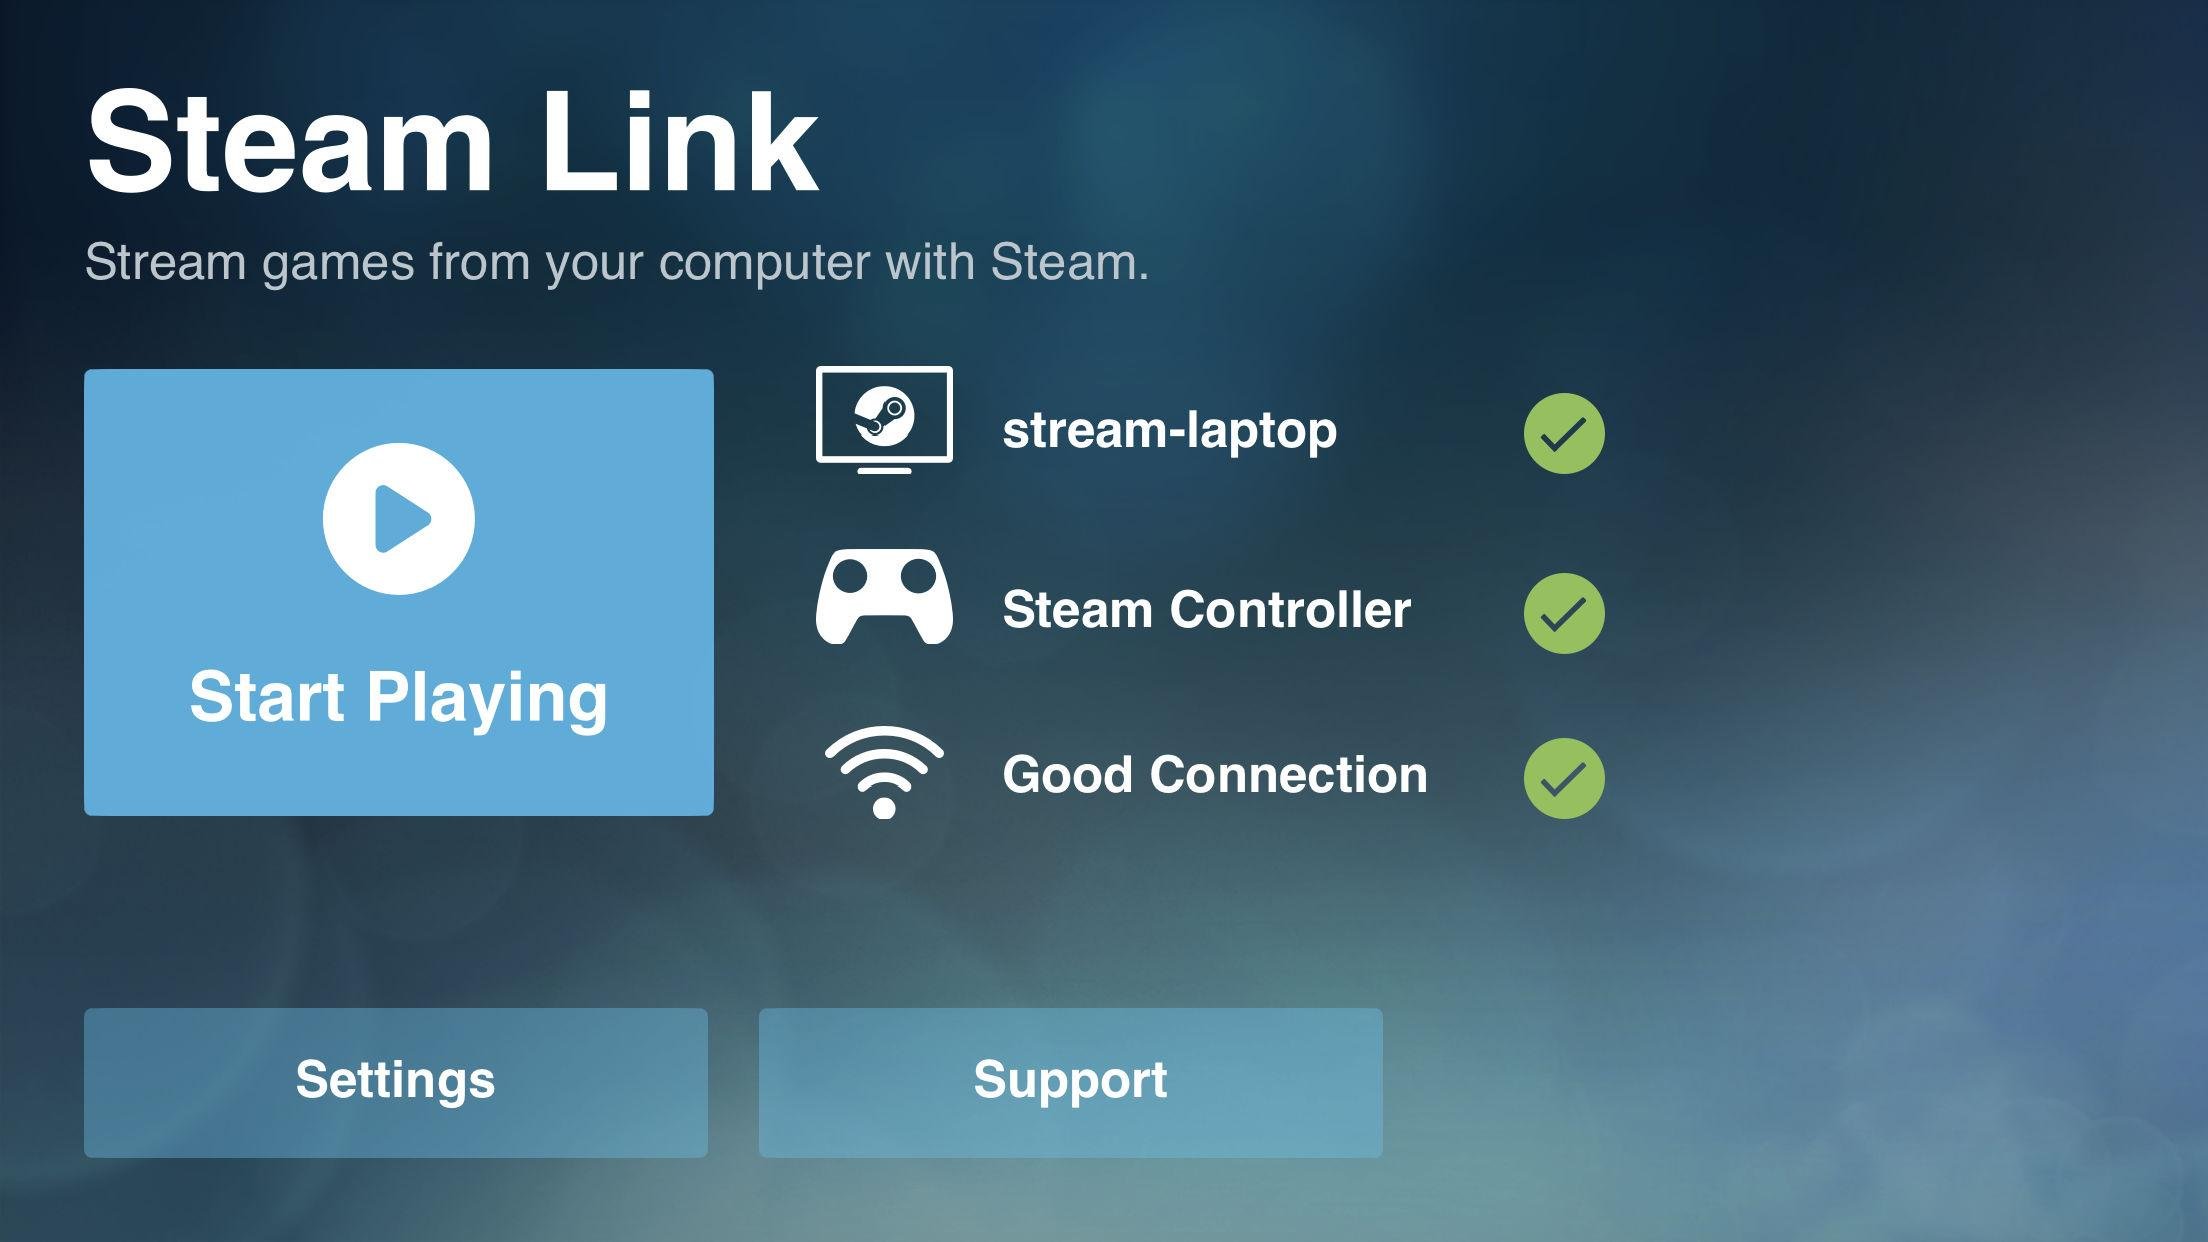 يضيف "Steam Link" الجديد دعمًا لوظائف لوحة المفاتيح والماوس ، وتشغيل الموسيقى أثناء البث ، والمزيد على iOS 111